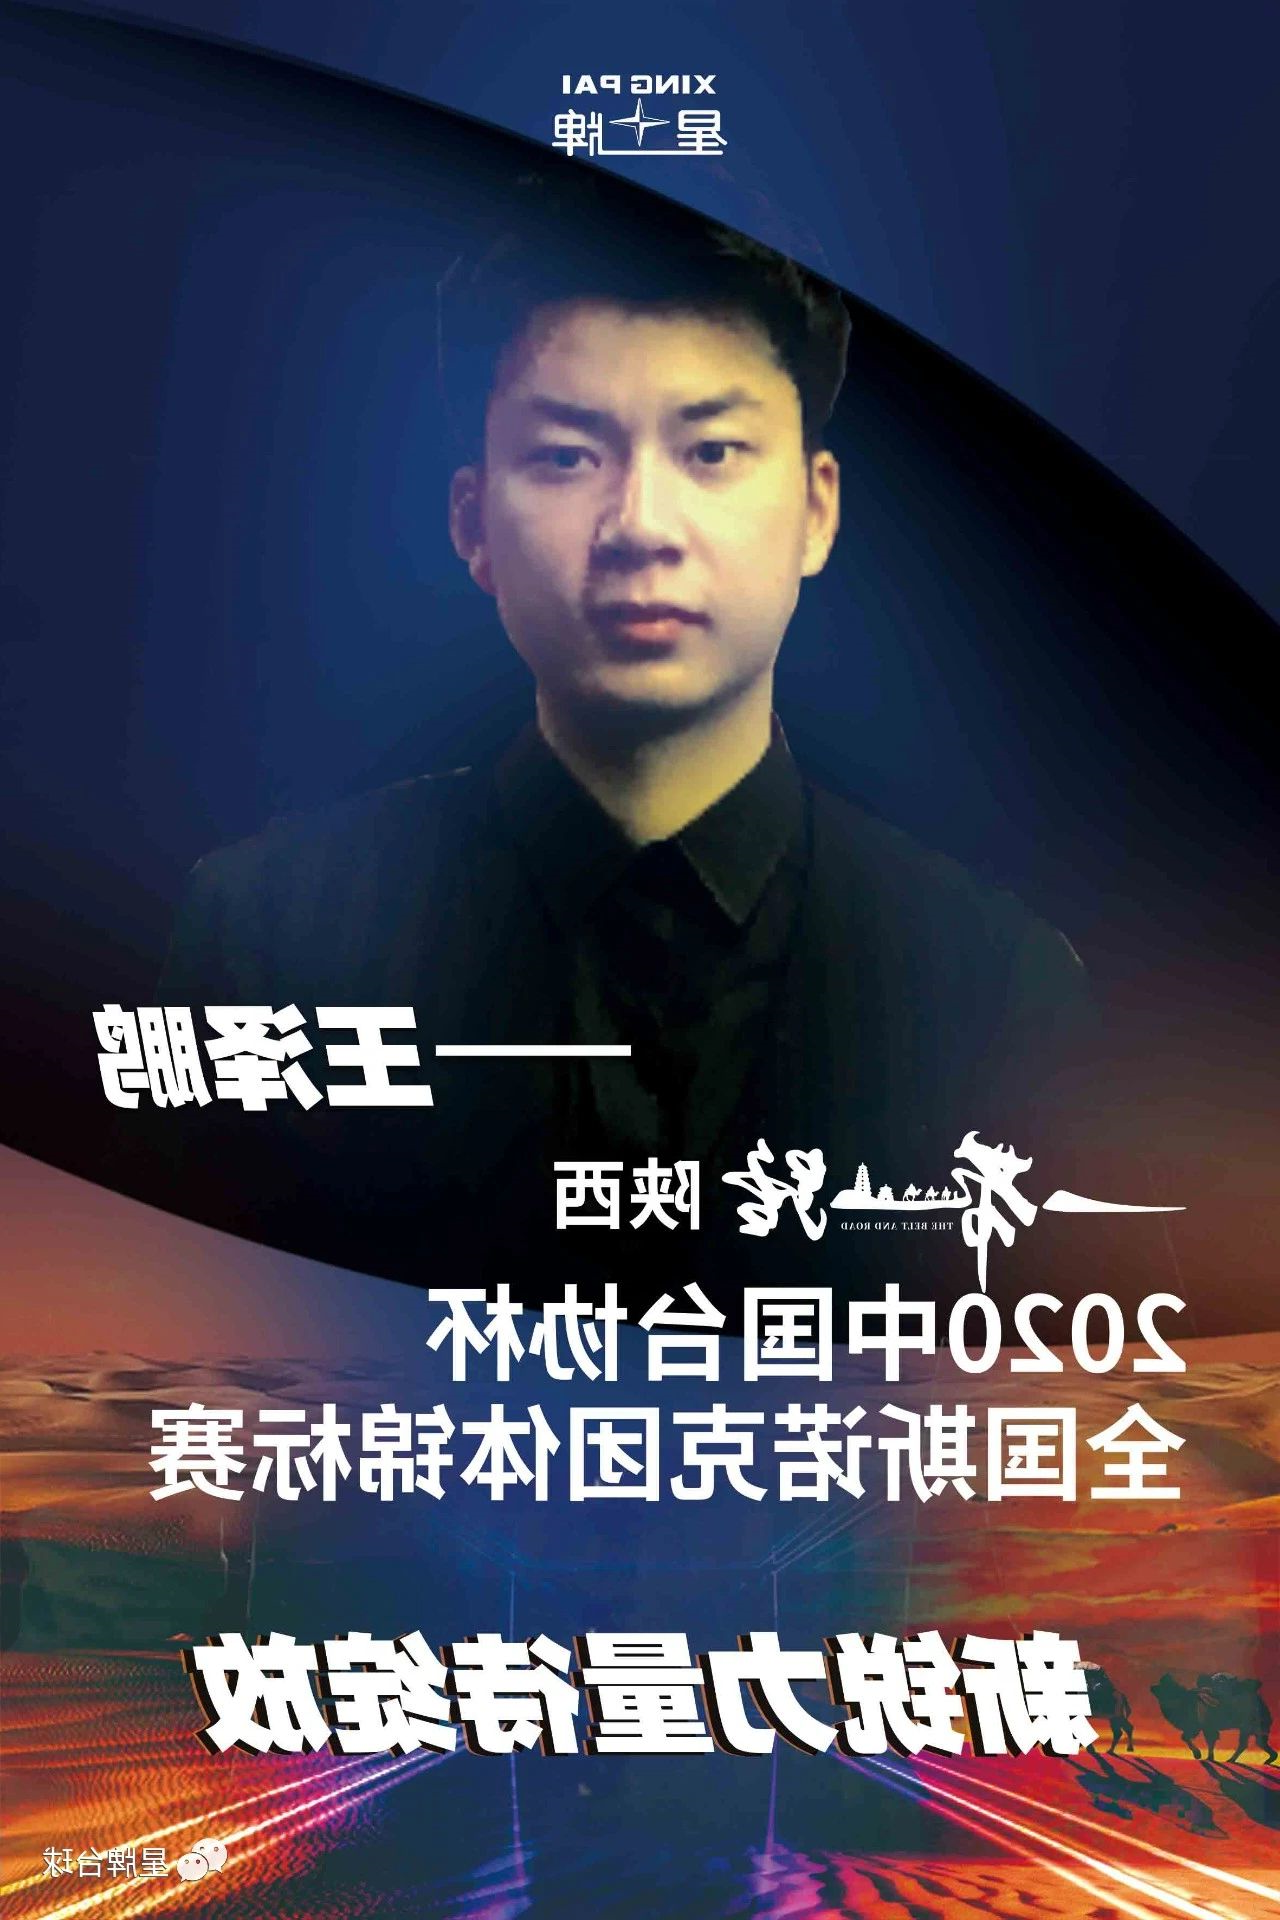 北京kok娱乐平台
代表队出征全国斯诺克团体锦标赛